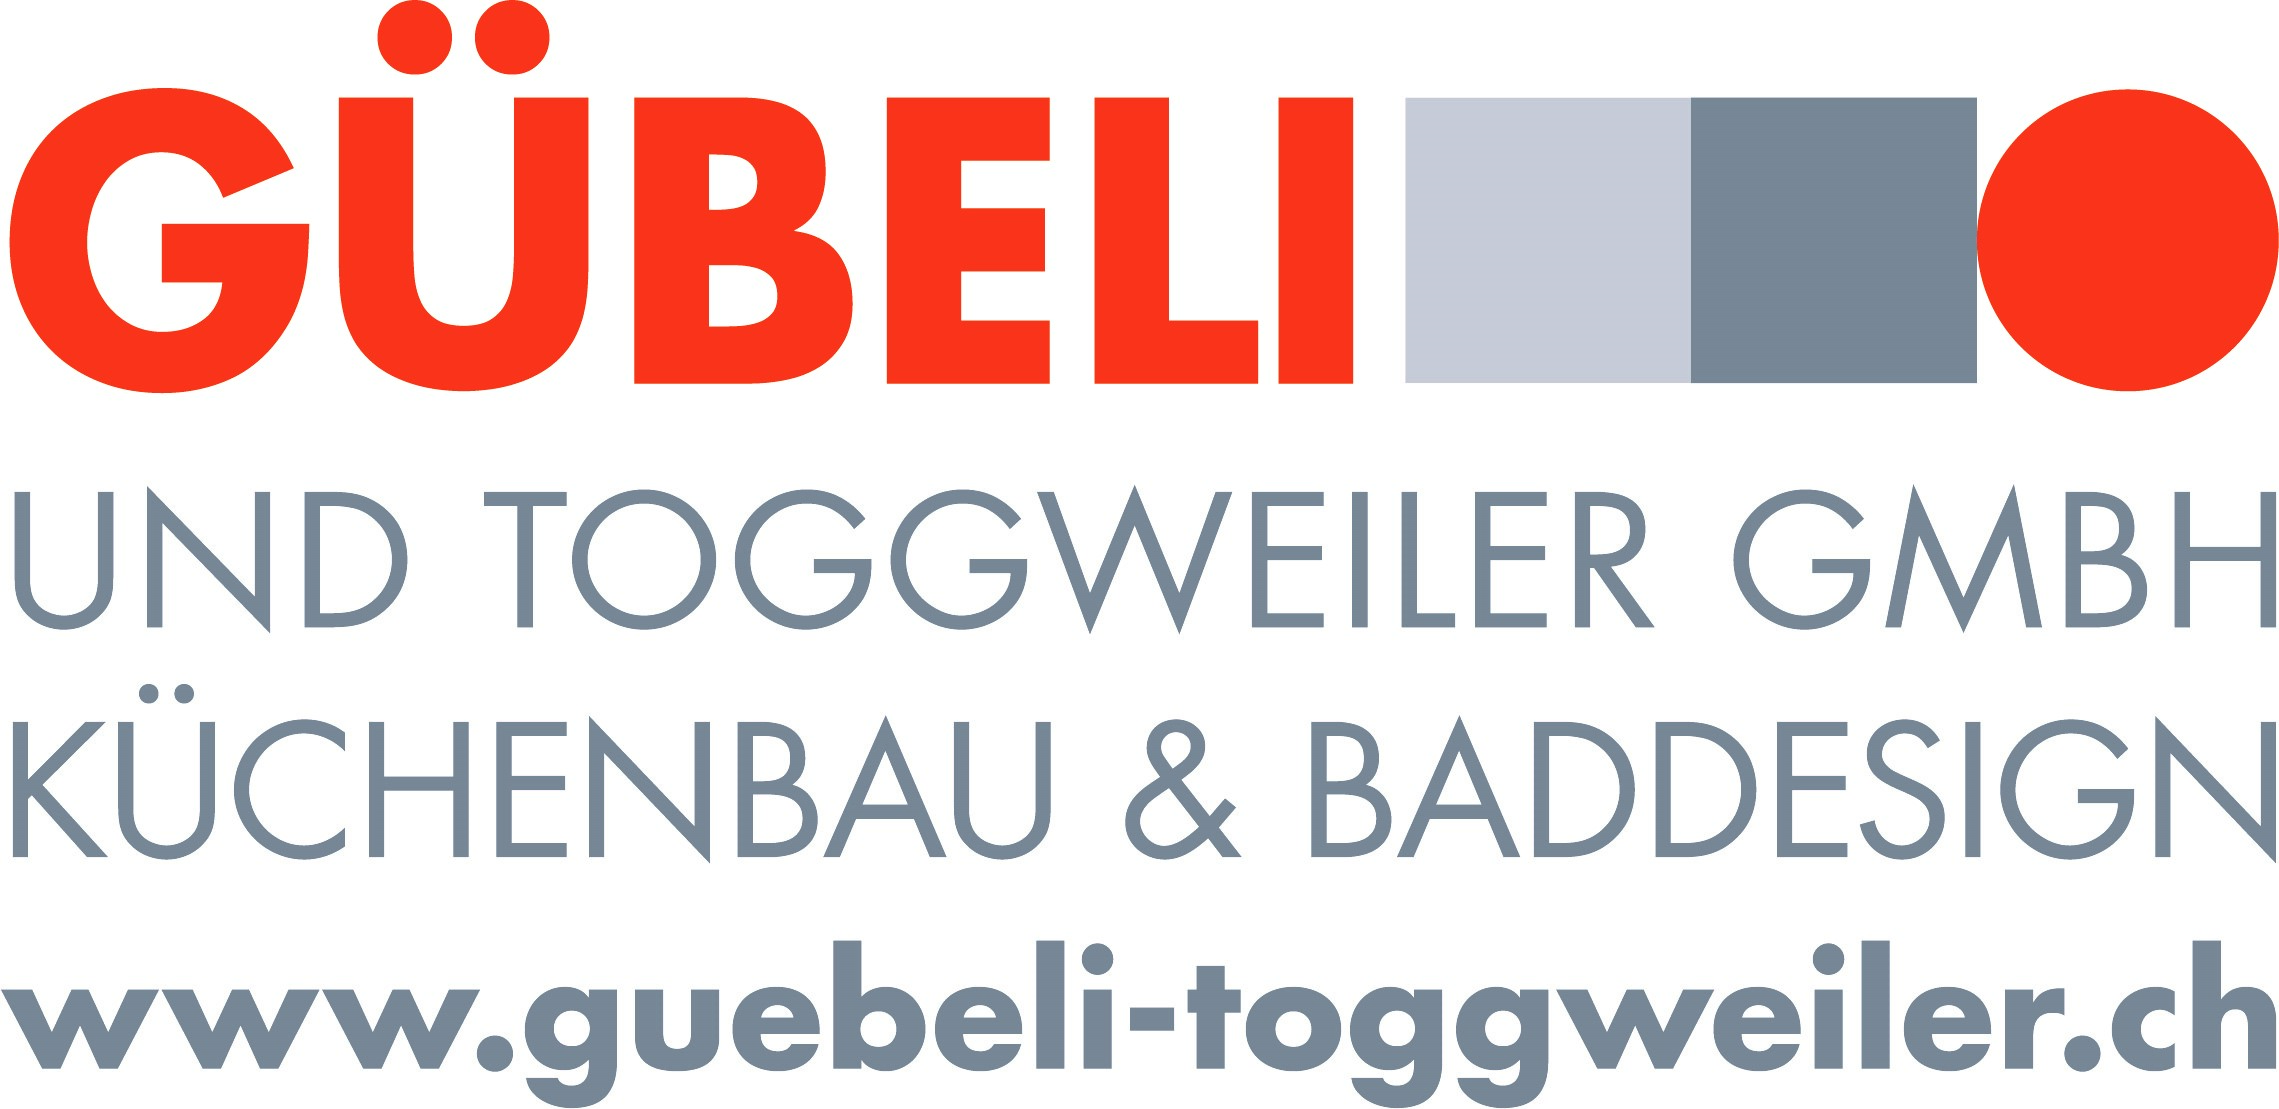 Gübeli und Toggweiler GmbH  Küchenbau & Baddesign 